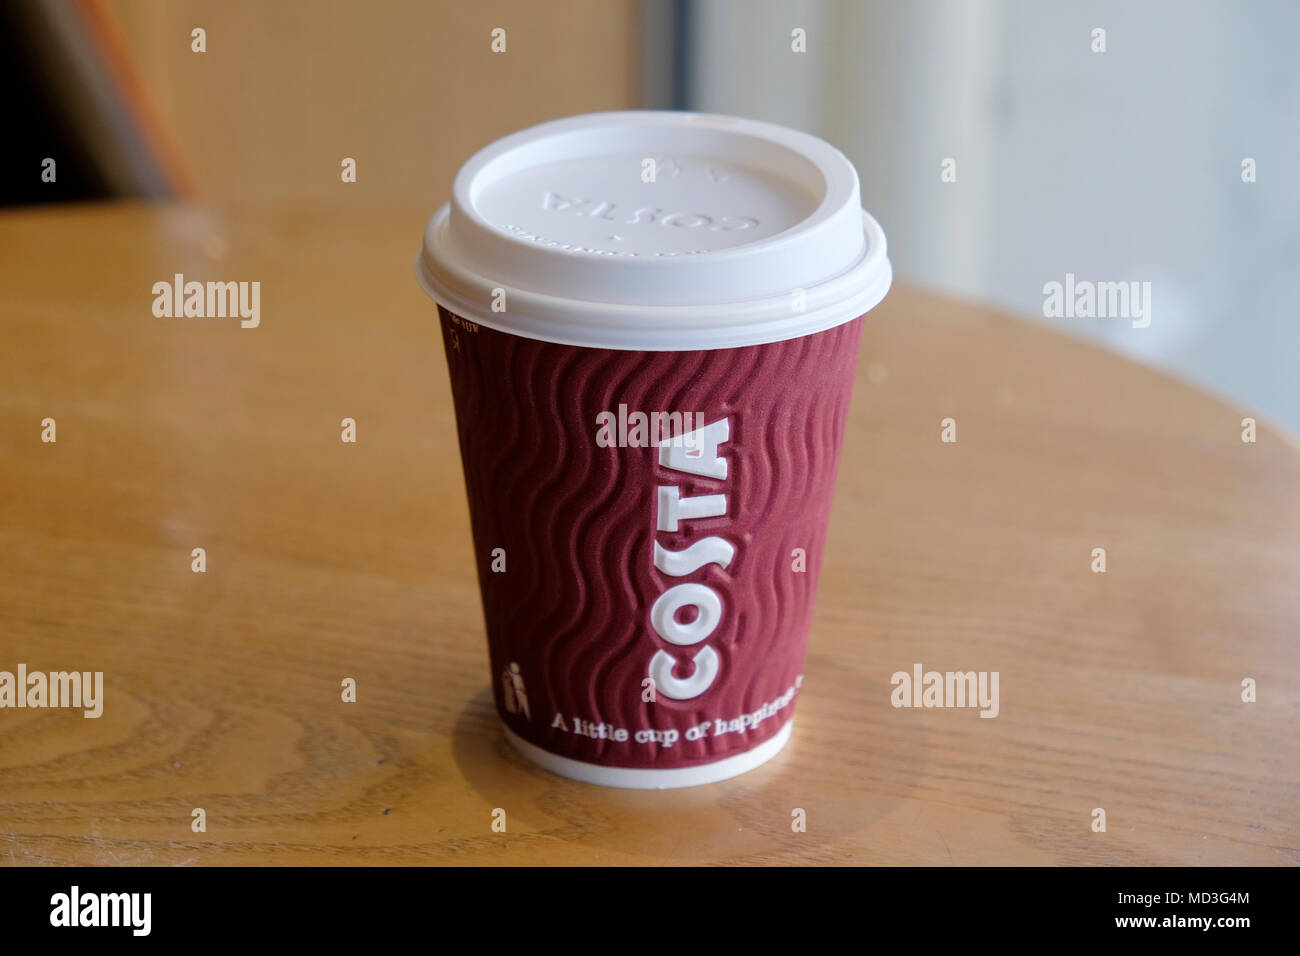 Londra, UK, 18 aprile 2018. Nel Regno Unito la più grande catena di caffè, caffè Costa impostato a riciclare circa mezzo miliardo di coppe da asporto di un anno. Credito: Yanice Idir / Alamy Live News Foto Stock